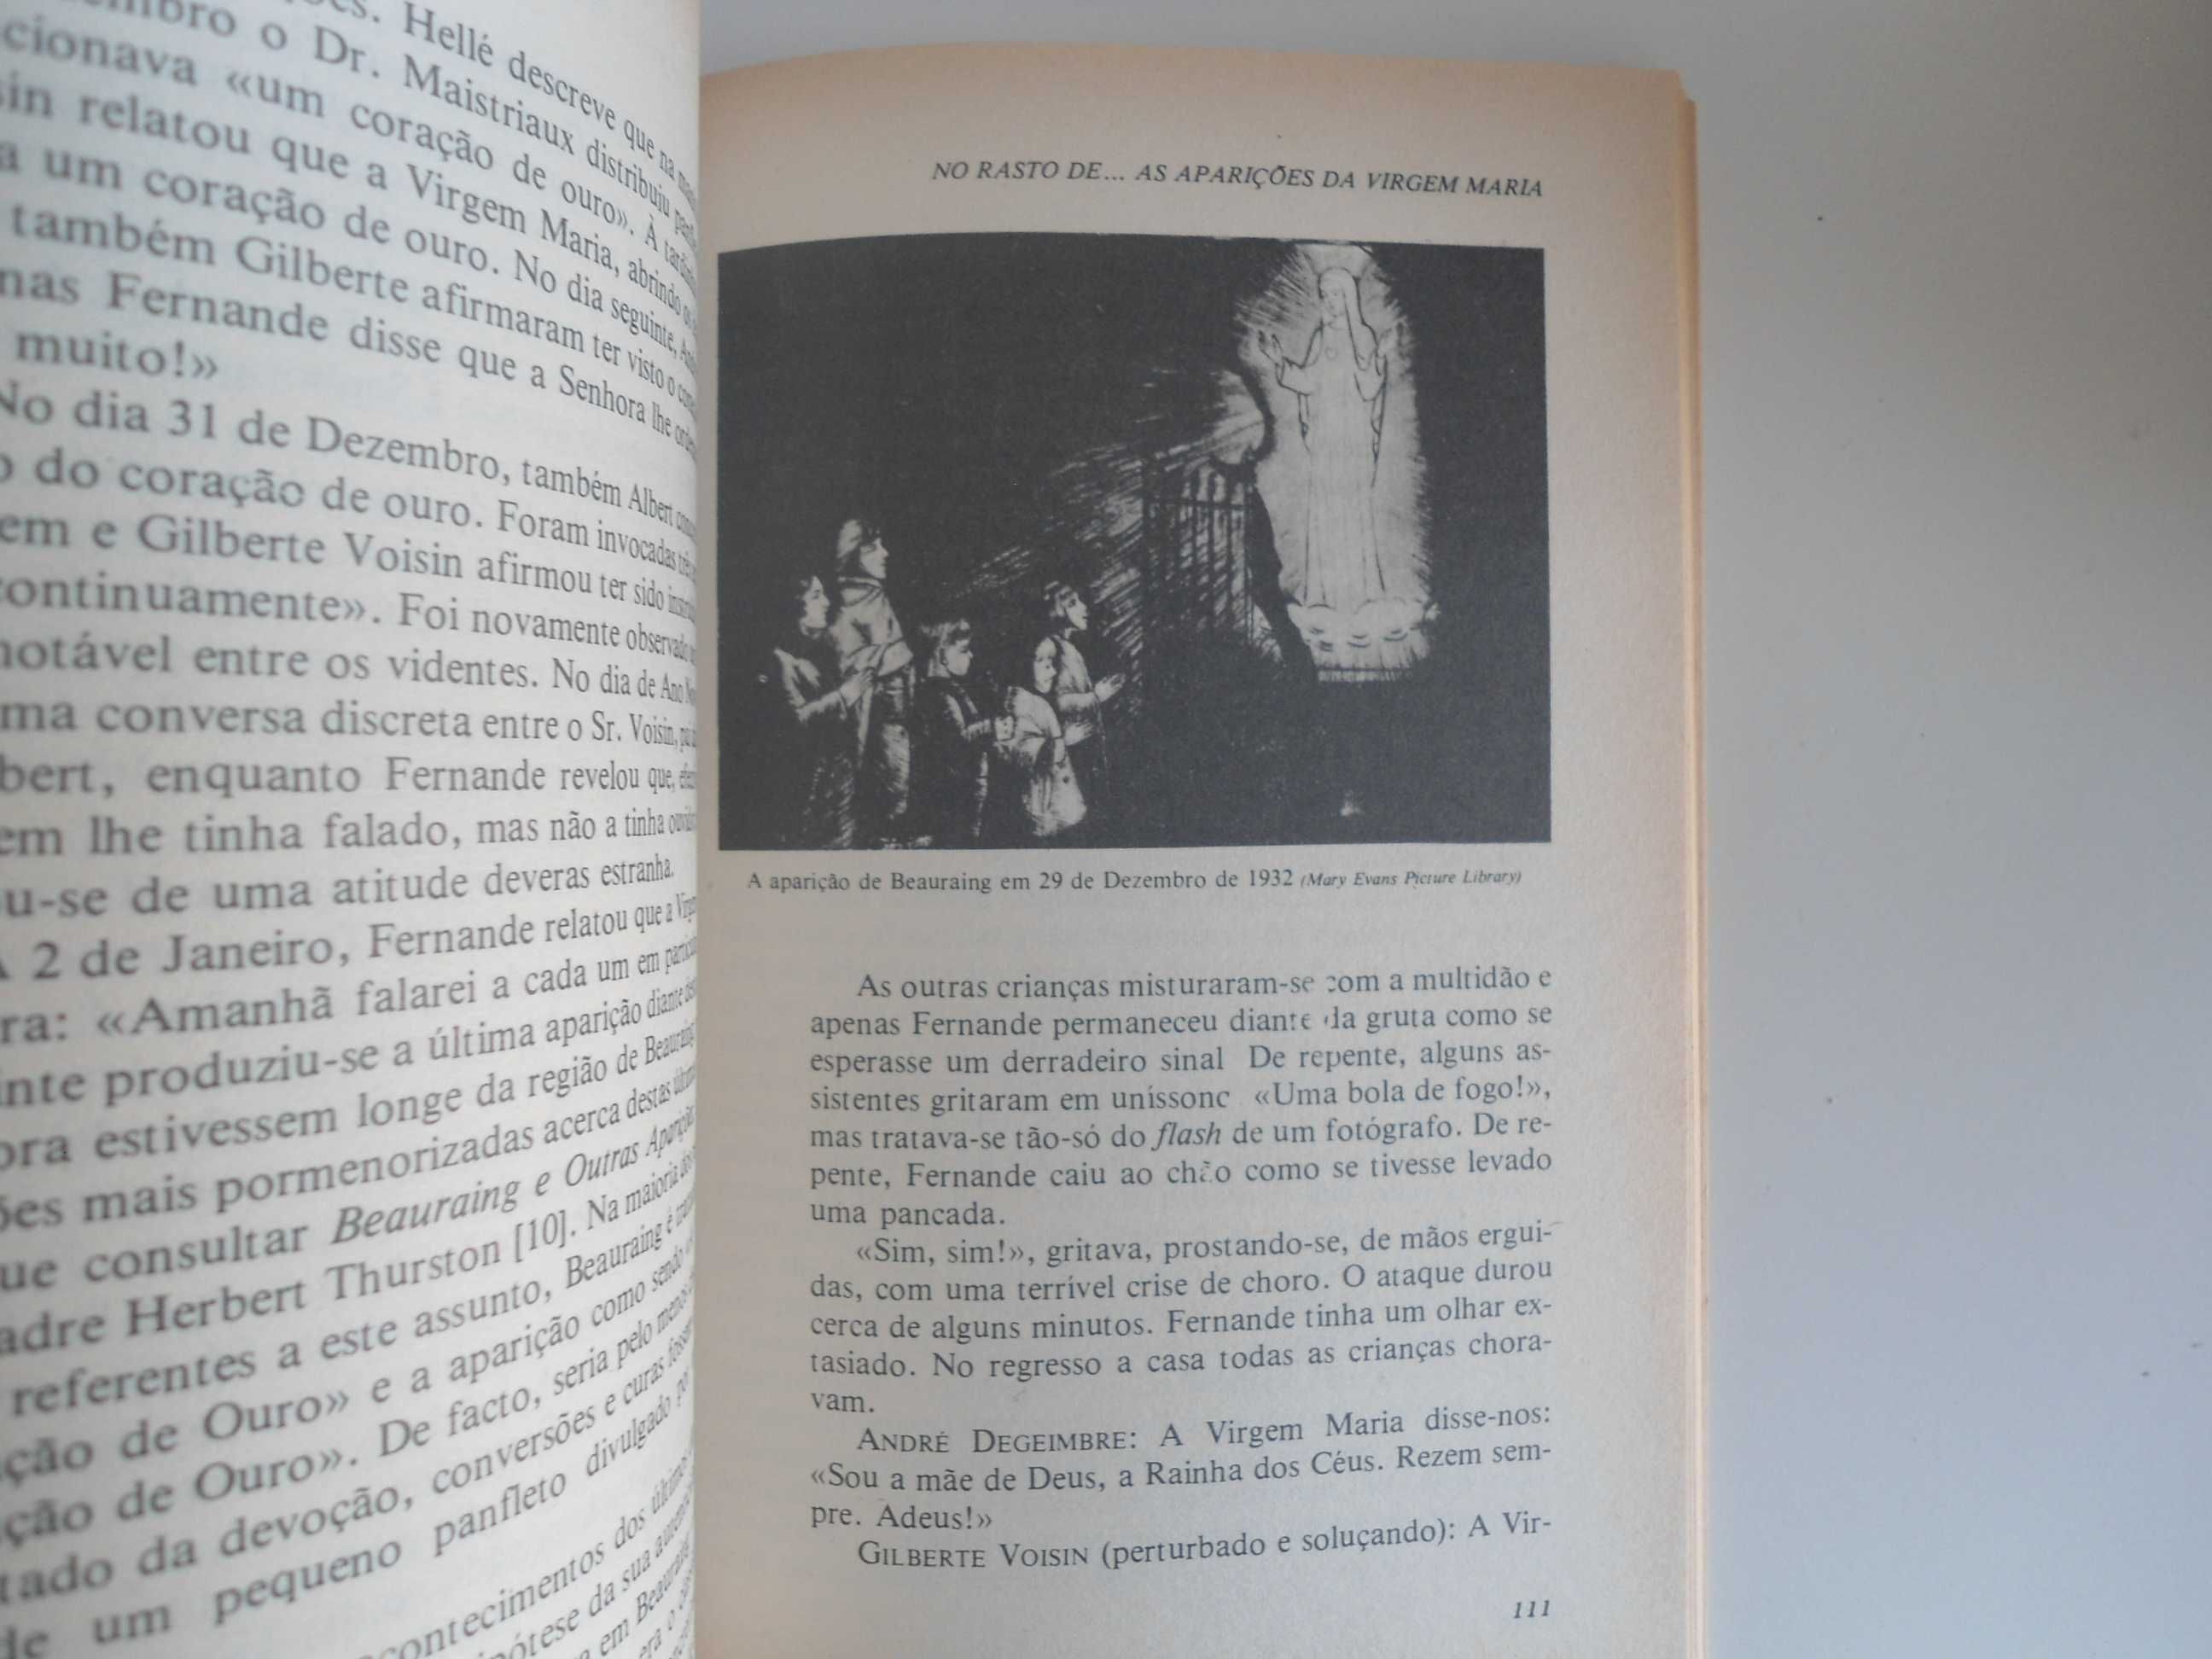 No rasto de as aparições da Virgem Maria de Fátima Lurdes La Salette